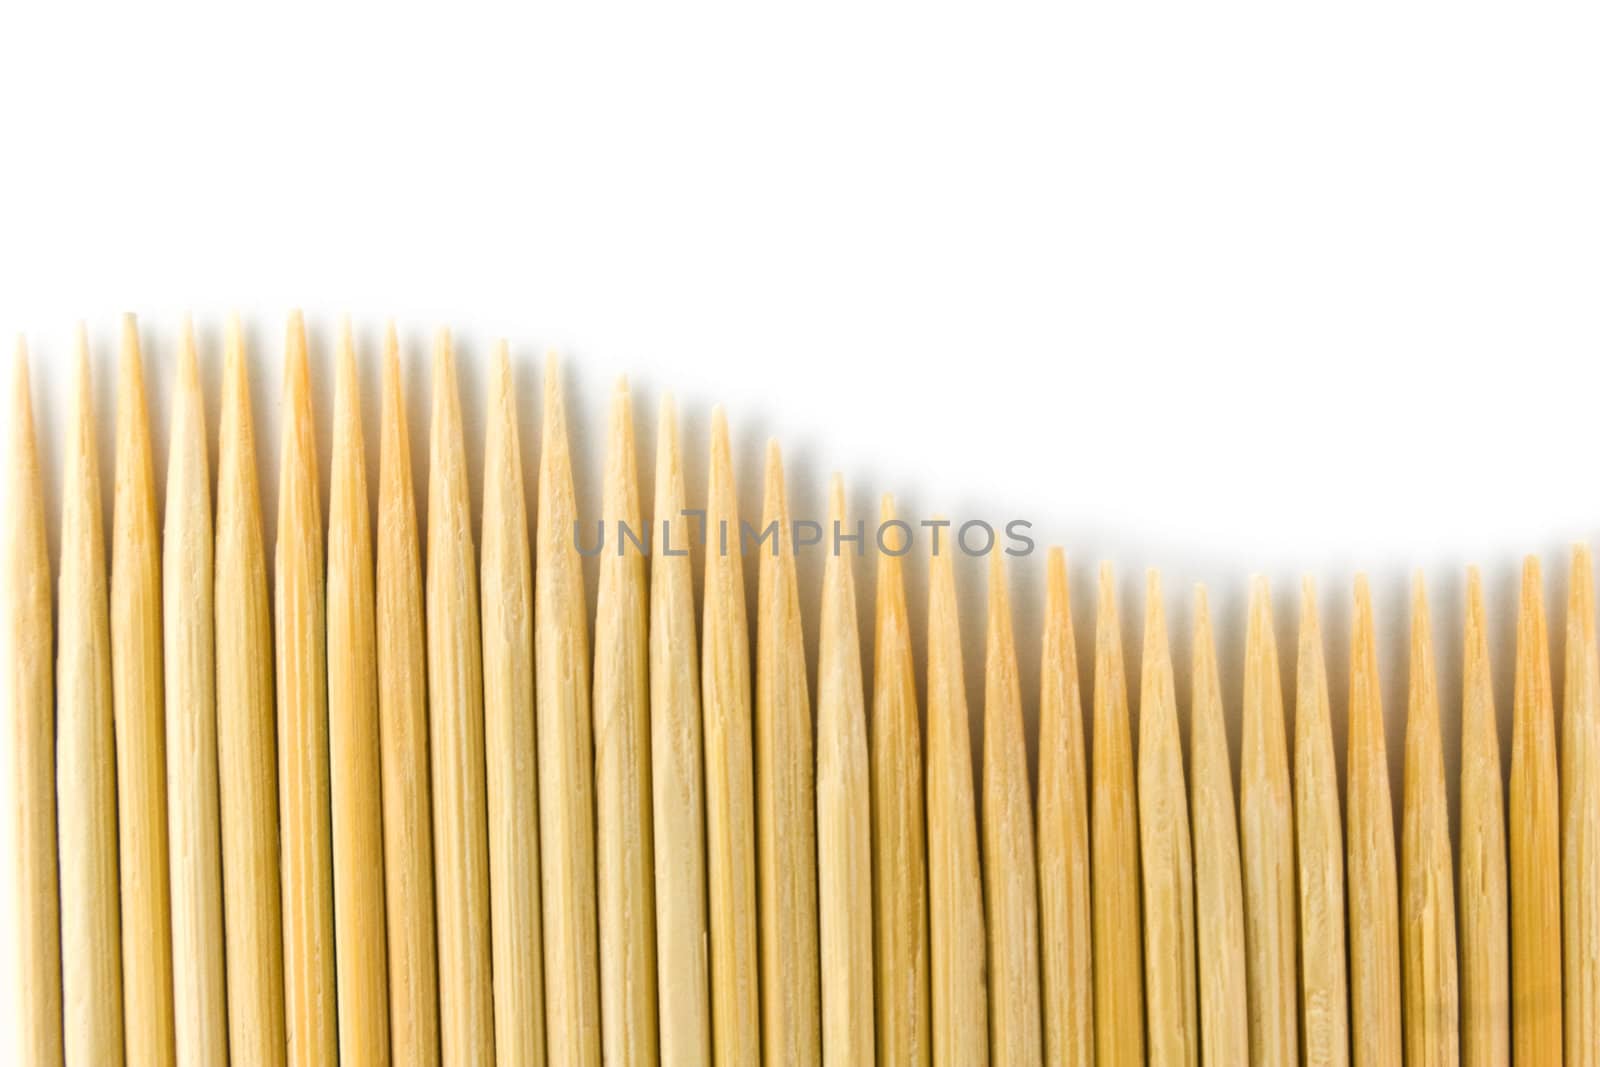 Toothpick by vtorous